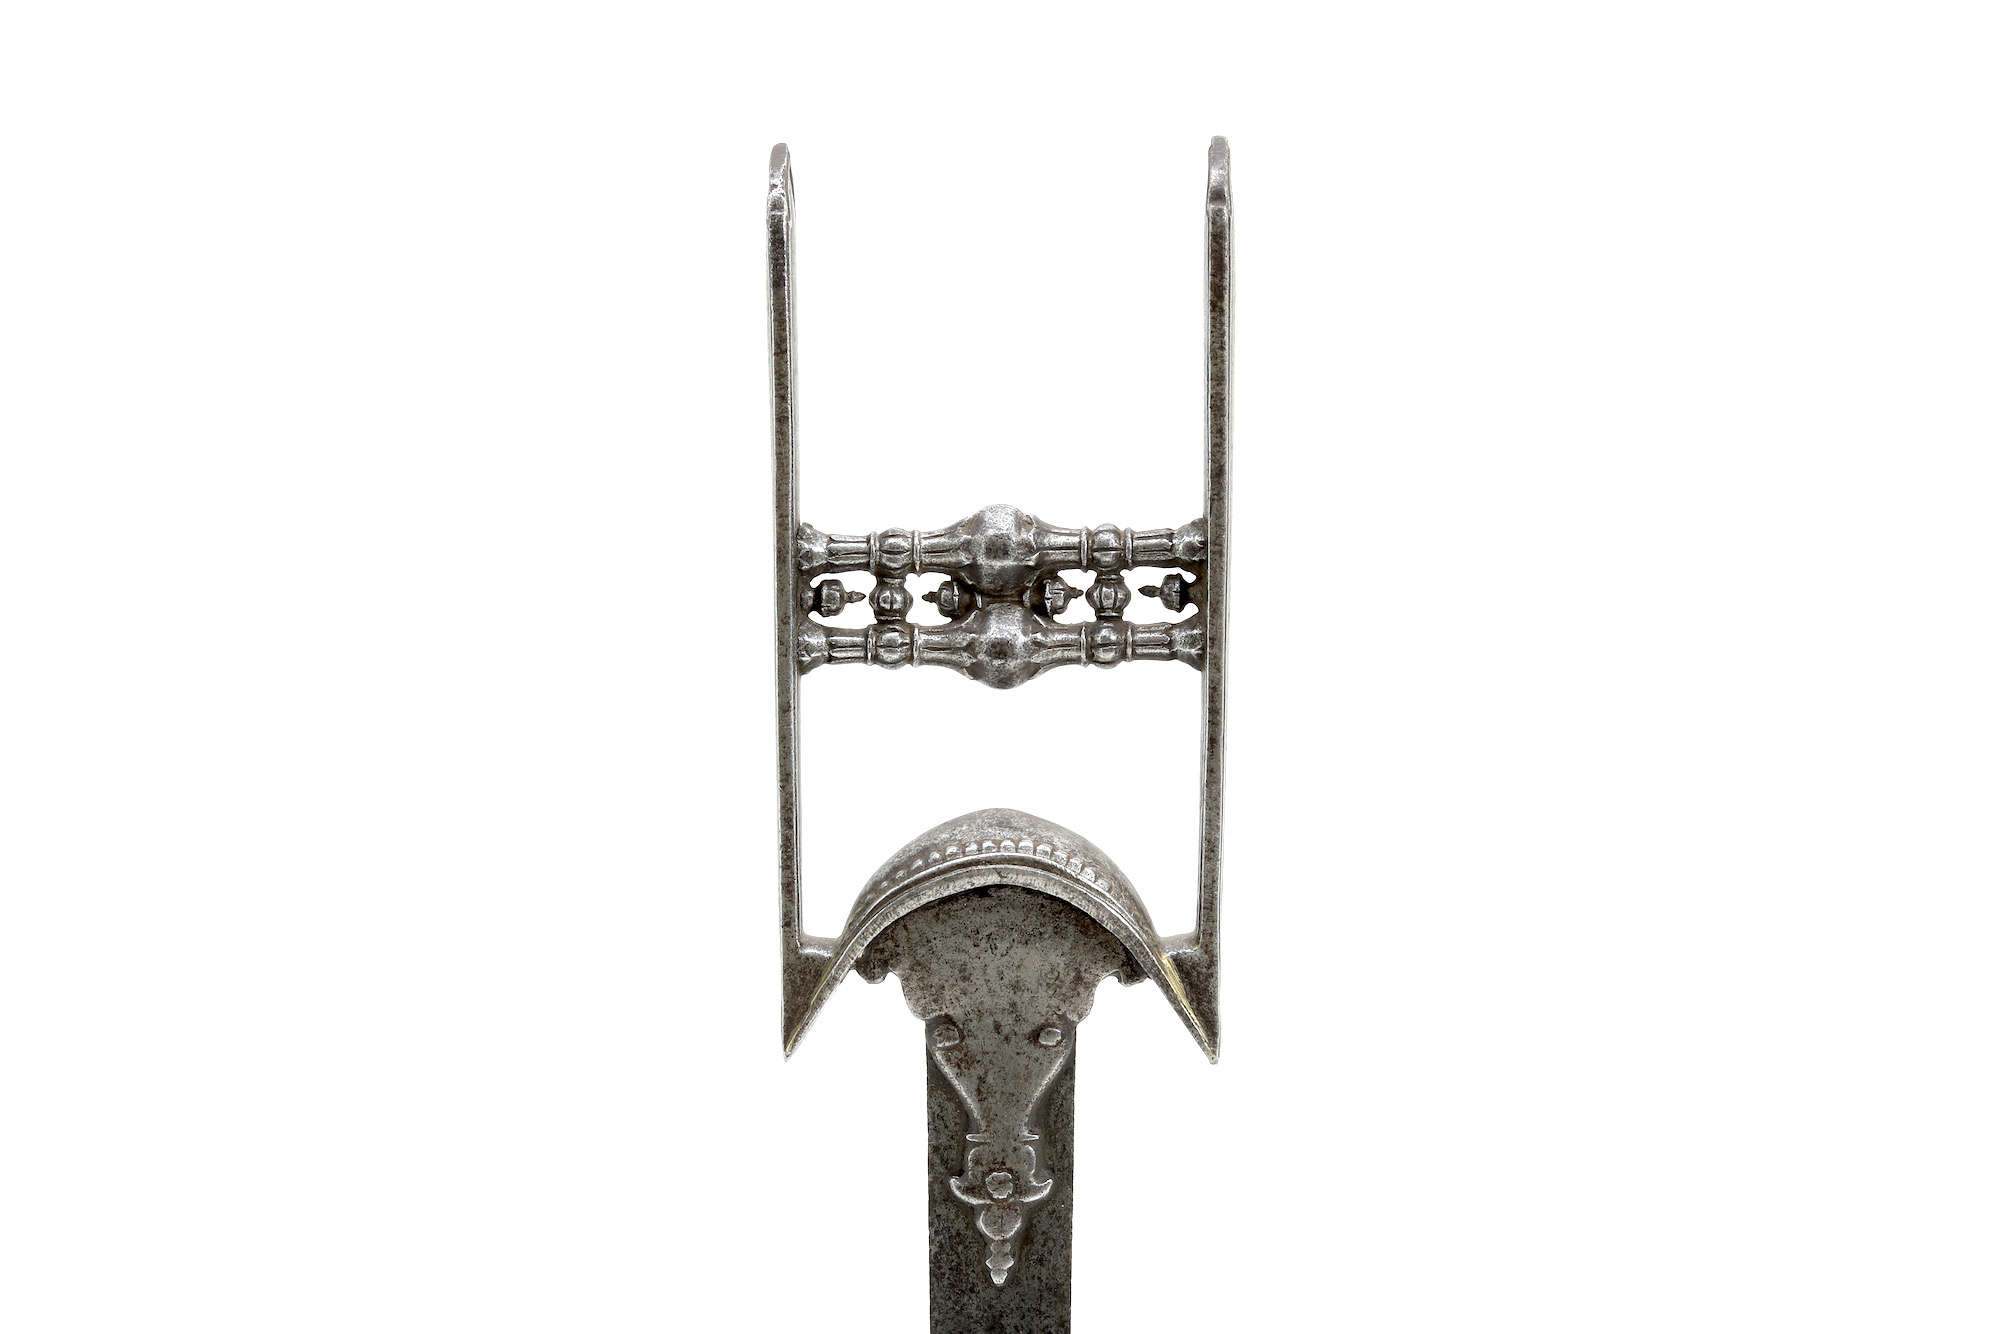 17th century chiseled iron katar